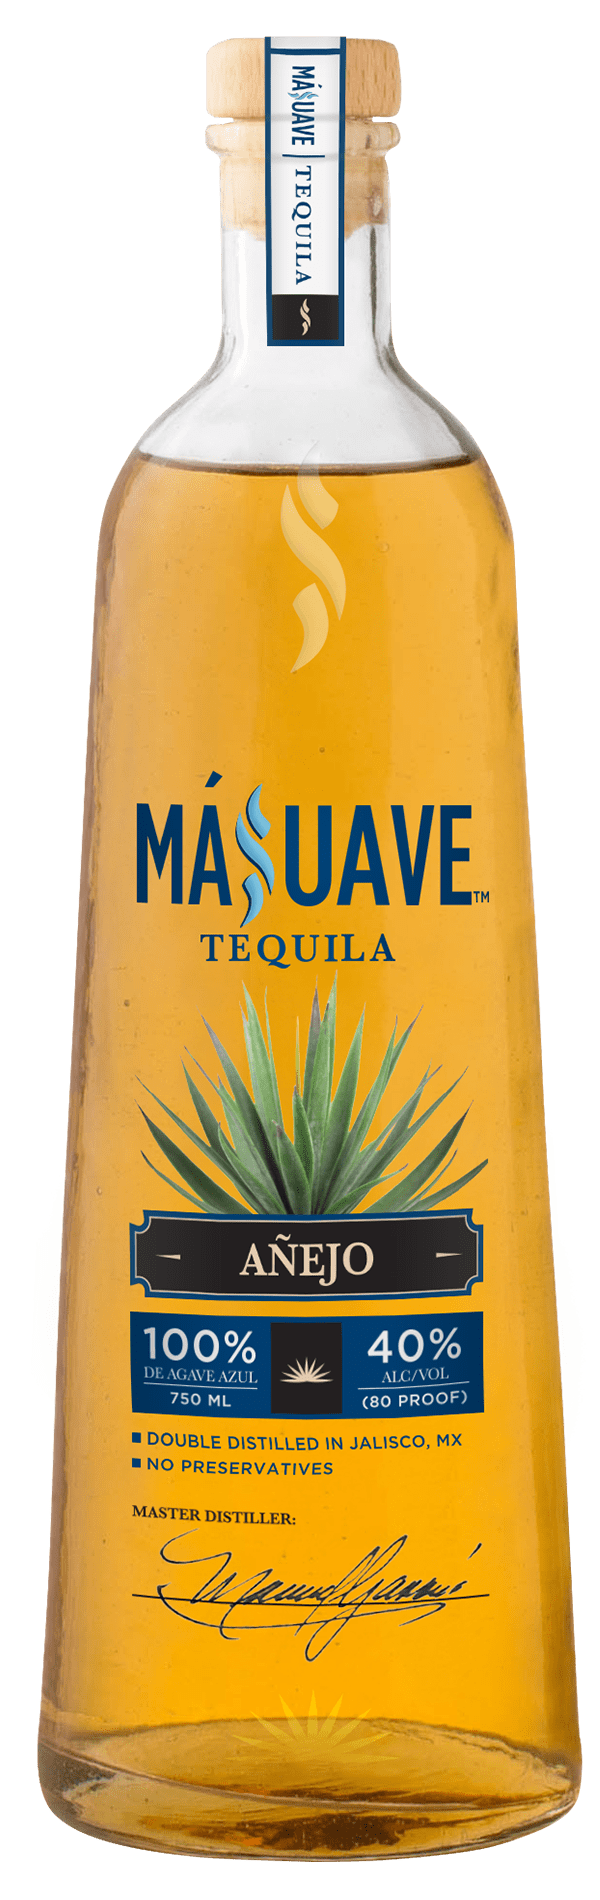 Masuave Tequila Anejo